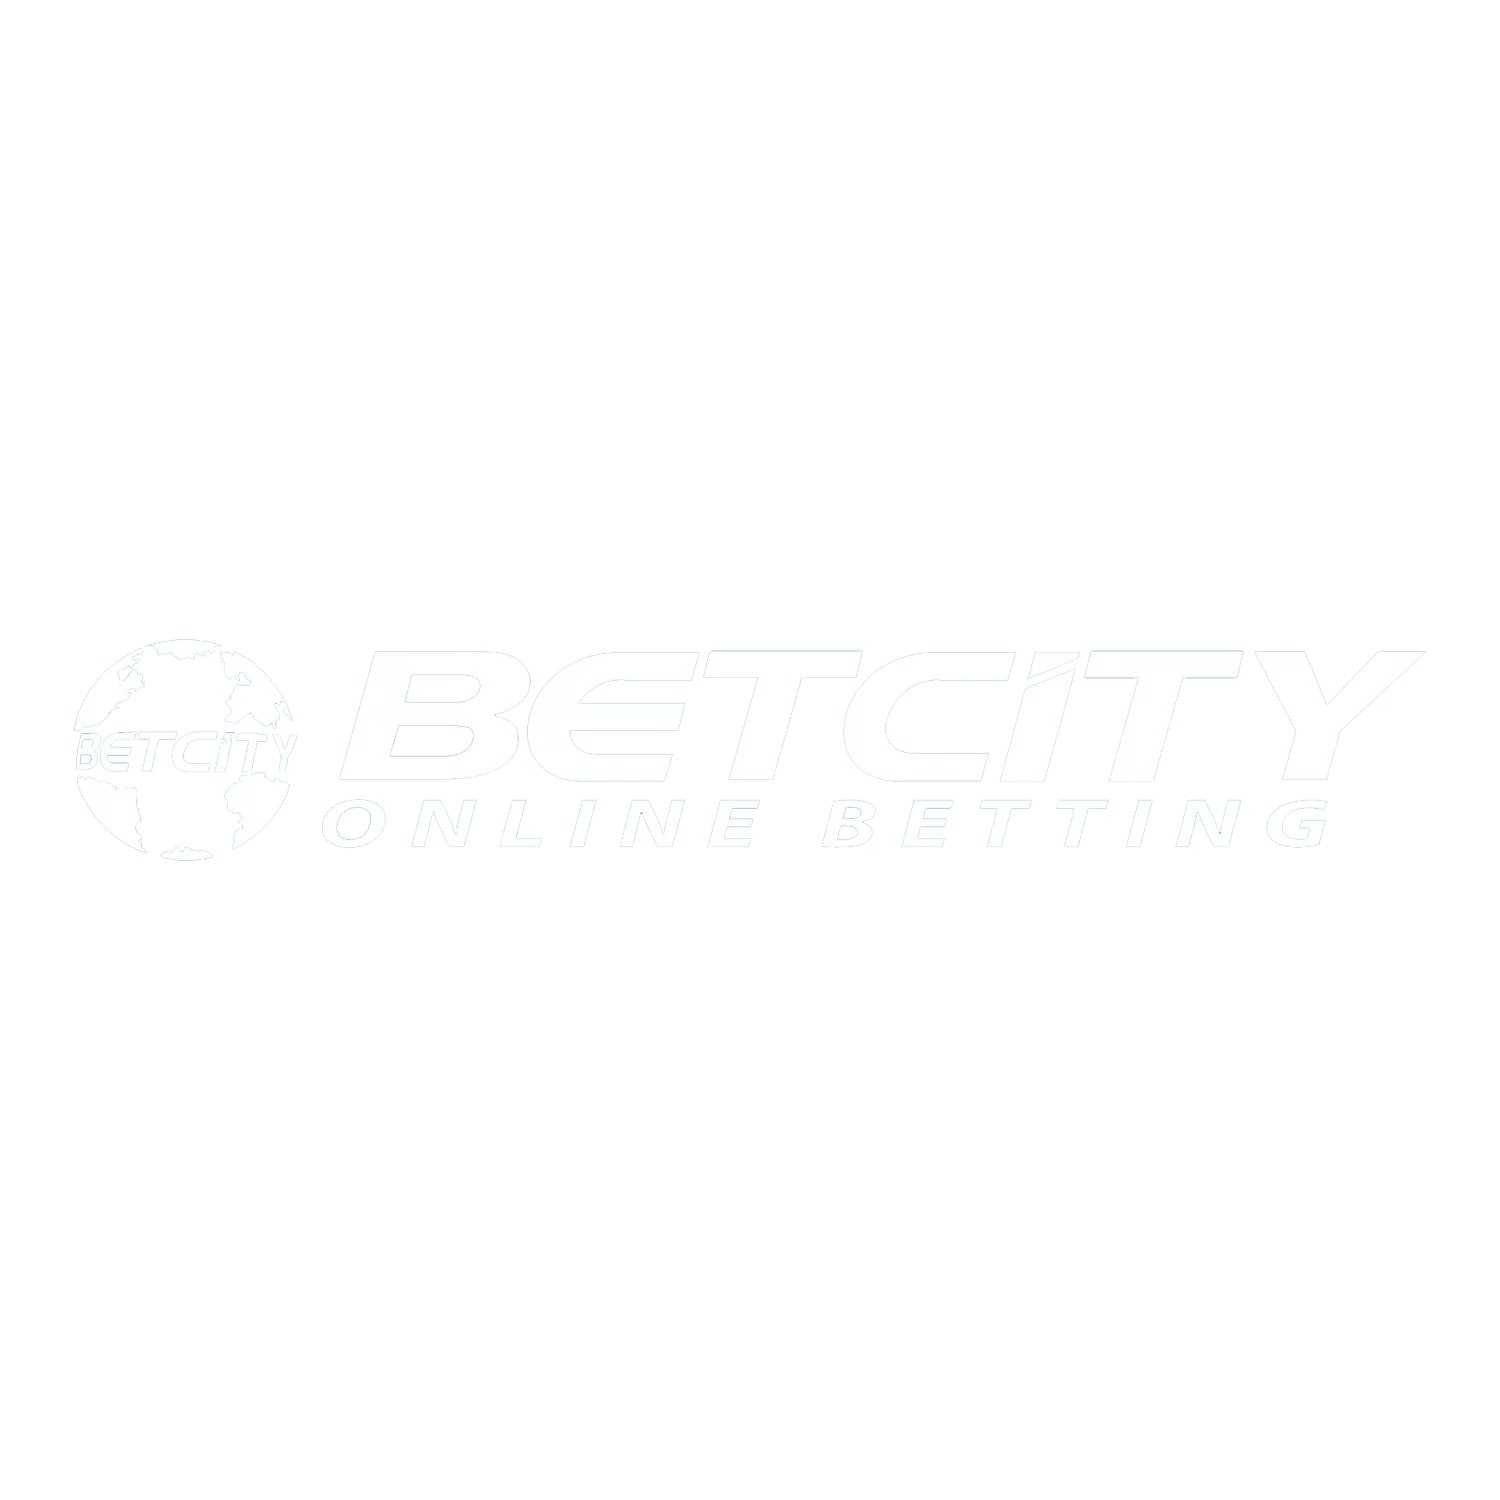 Betcity साइट और उसके ऐप्स में स्पोर्ट्स और एस्पोर्ट्स मैचों पर दांव लगाना सीखें।